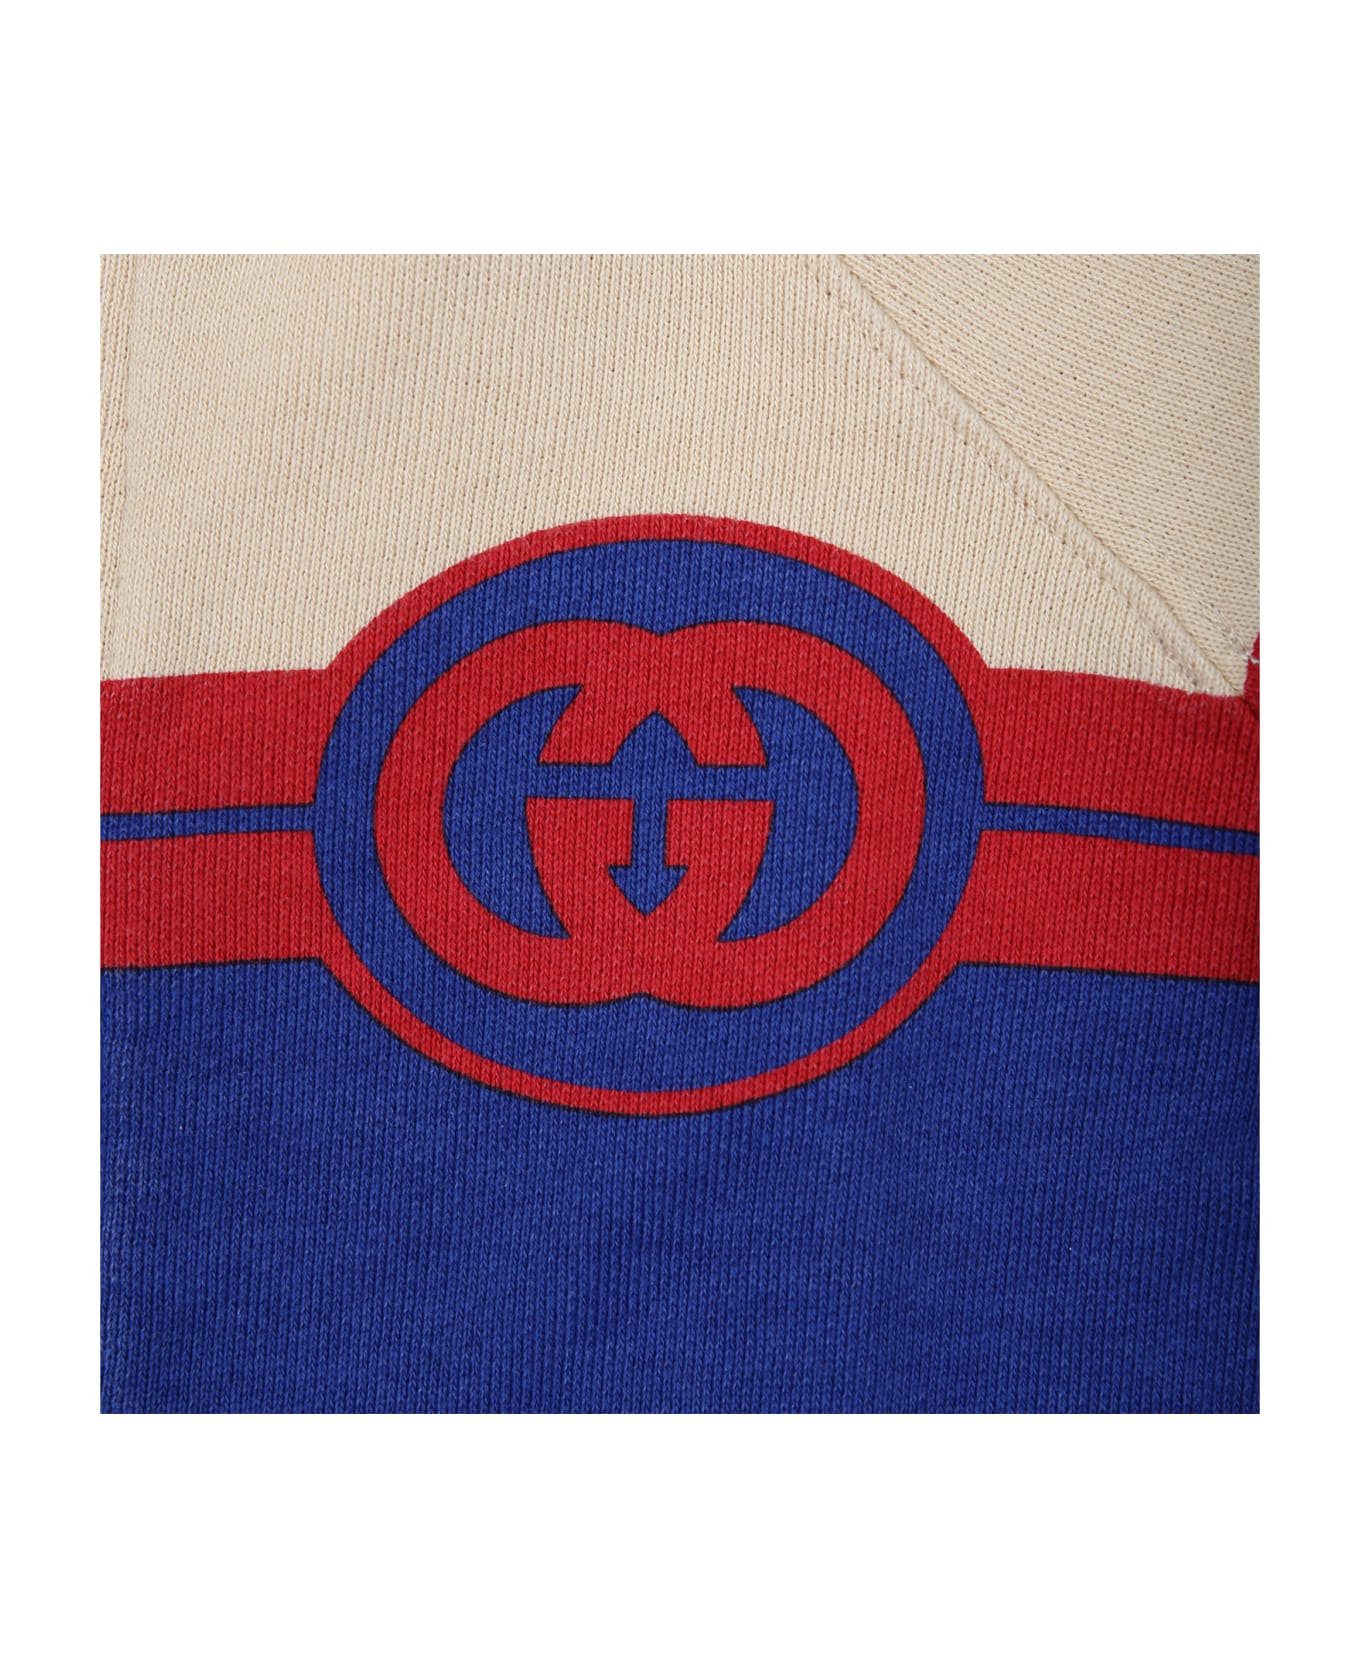 Gucci Multicolor Sweatshirt For Baby Boy With Logo - Multicolor